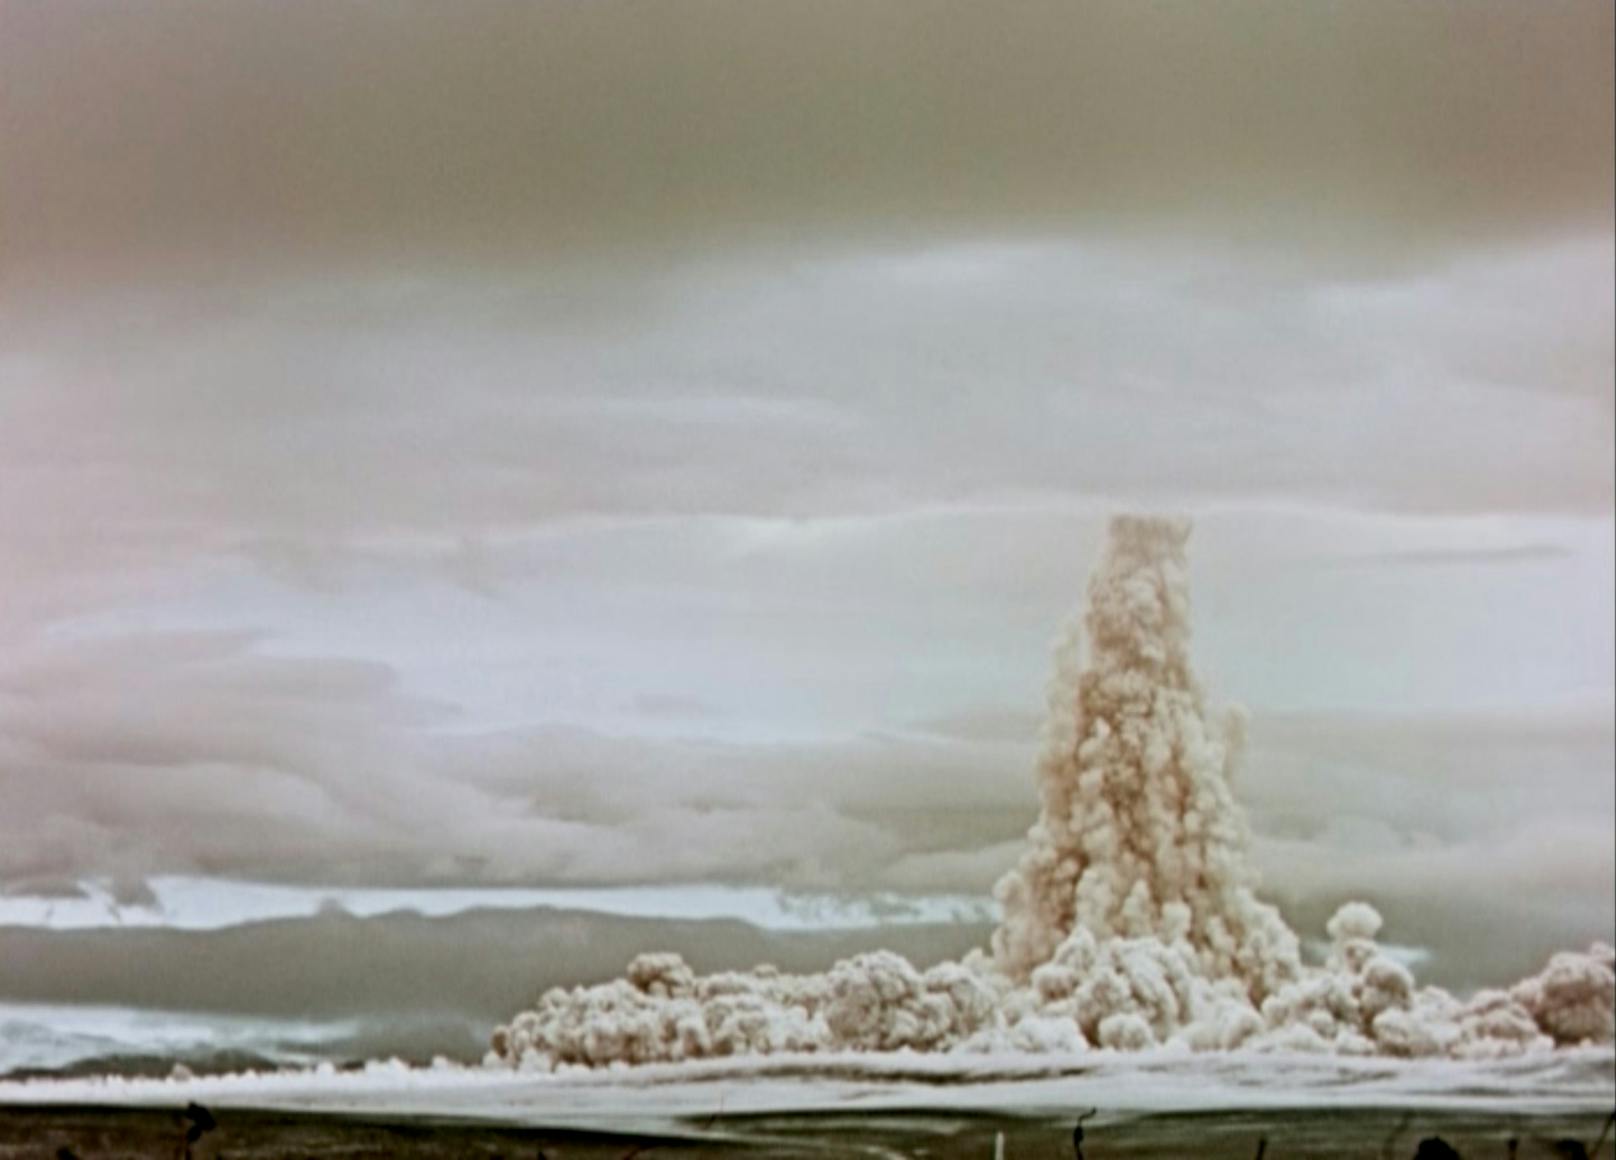 Geheim-Video zeigt stärkste Atomexplosion aller Zeiten